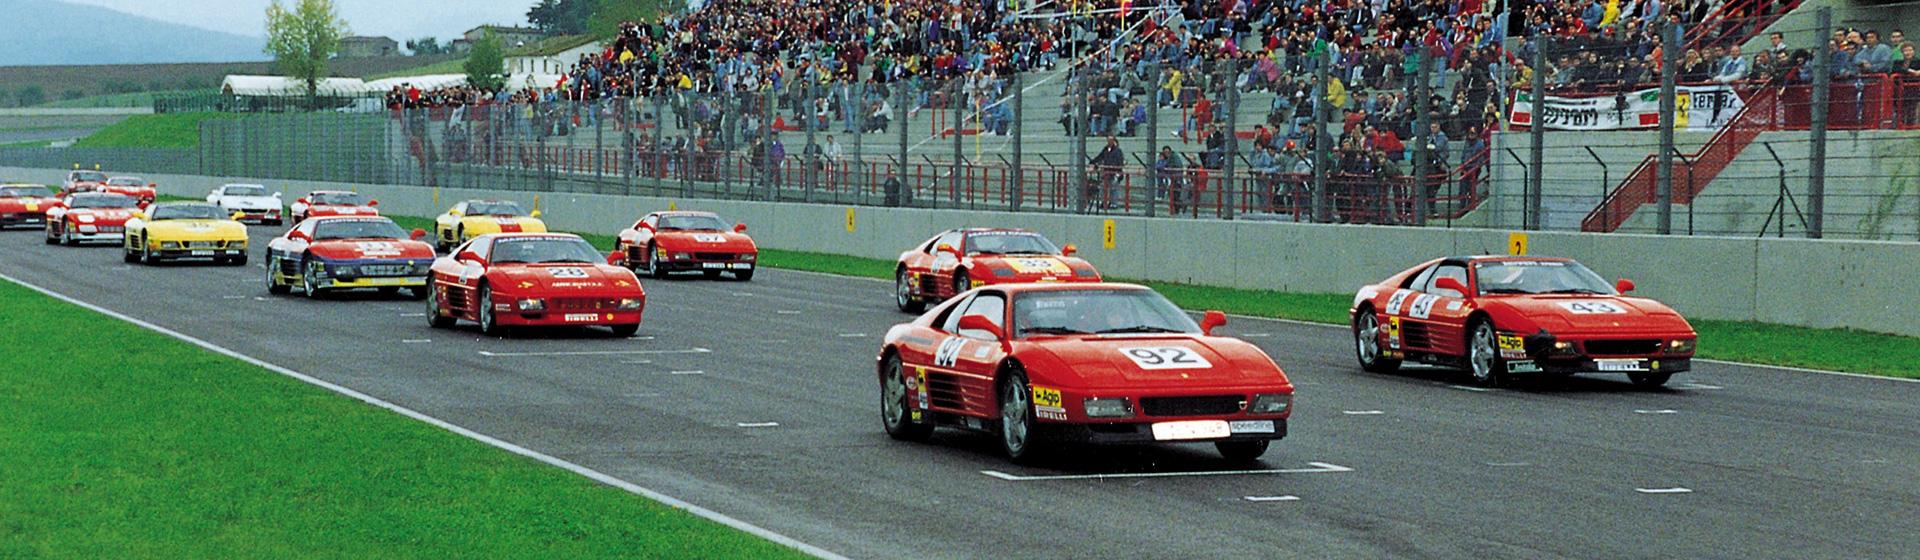 Ferrari challenge 348 challenge 1993 cover jpg